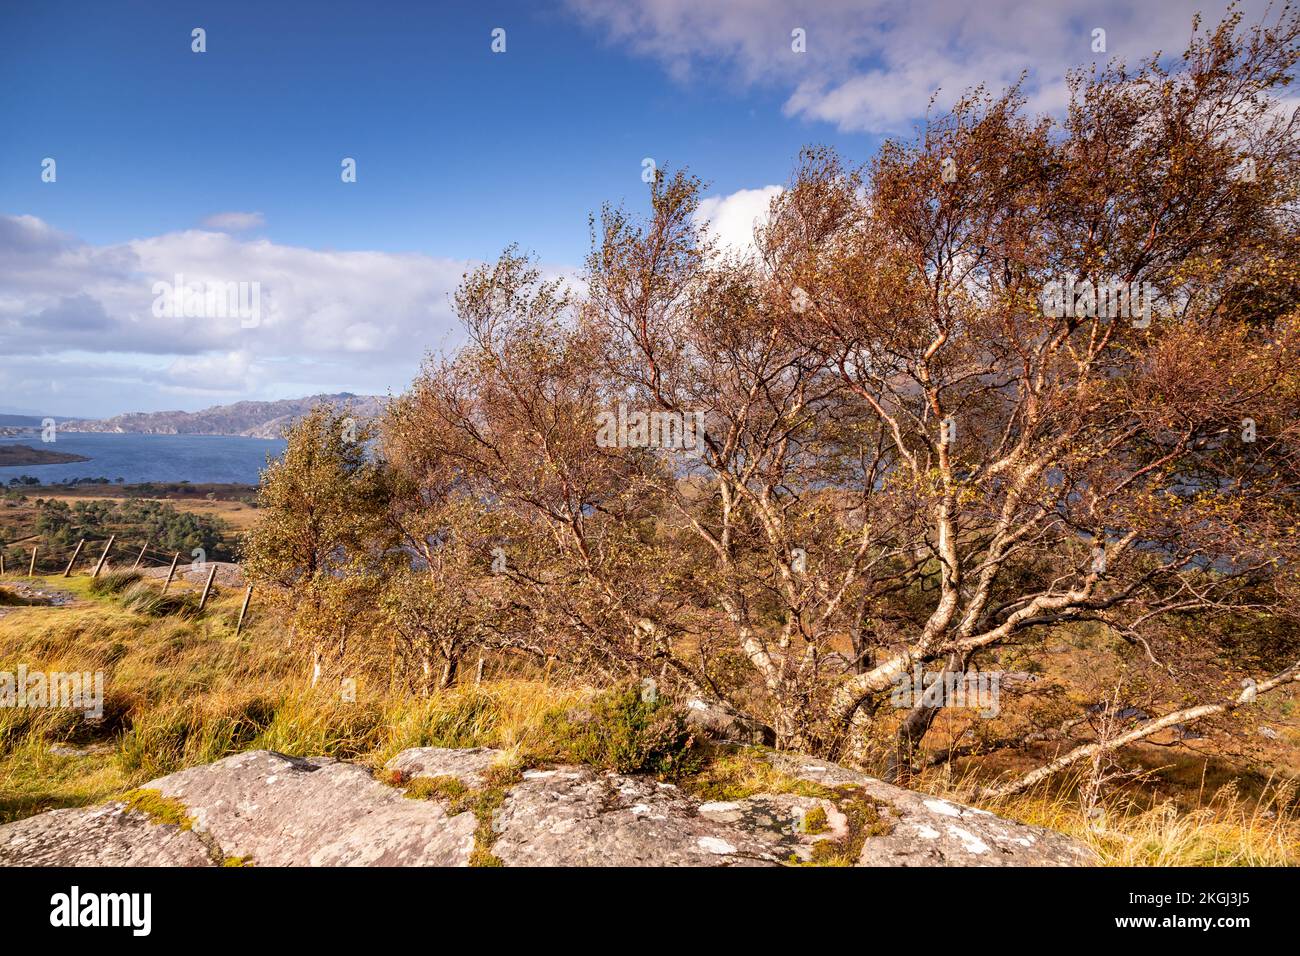 Little Loch Torridon in the highlands of northwest Scotland Stock Photo